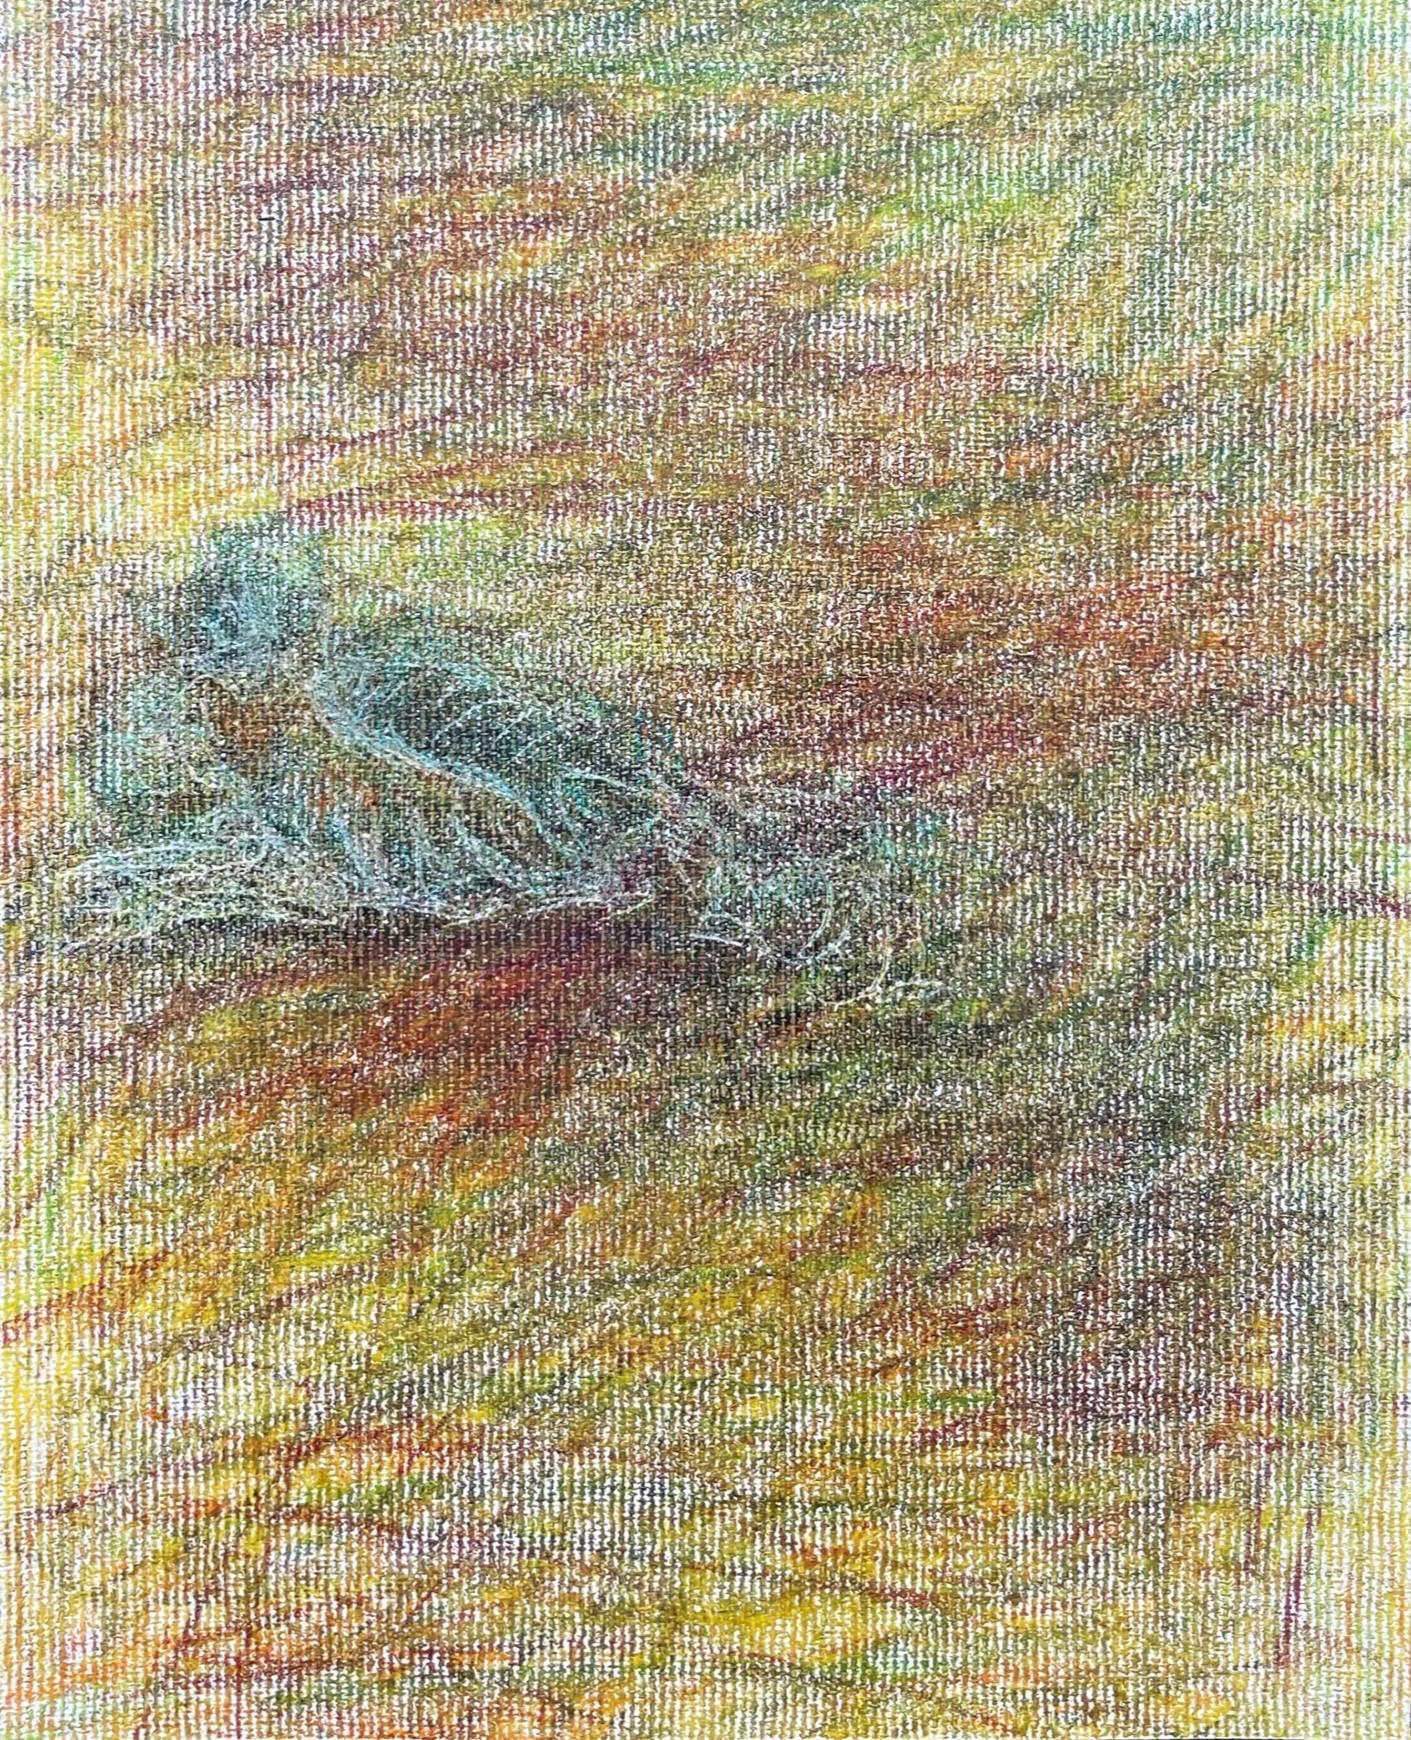 Body in the Field #11 – Landschaft, Buntstift, 21. Jahrhundert, Rot, Blau (Abstrakter Expressionismus), Art, von Zsolt Berszán